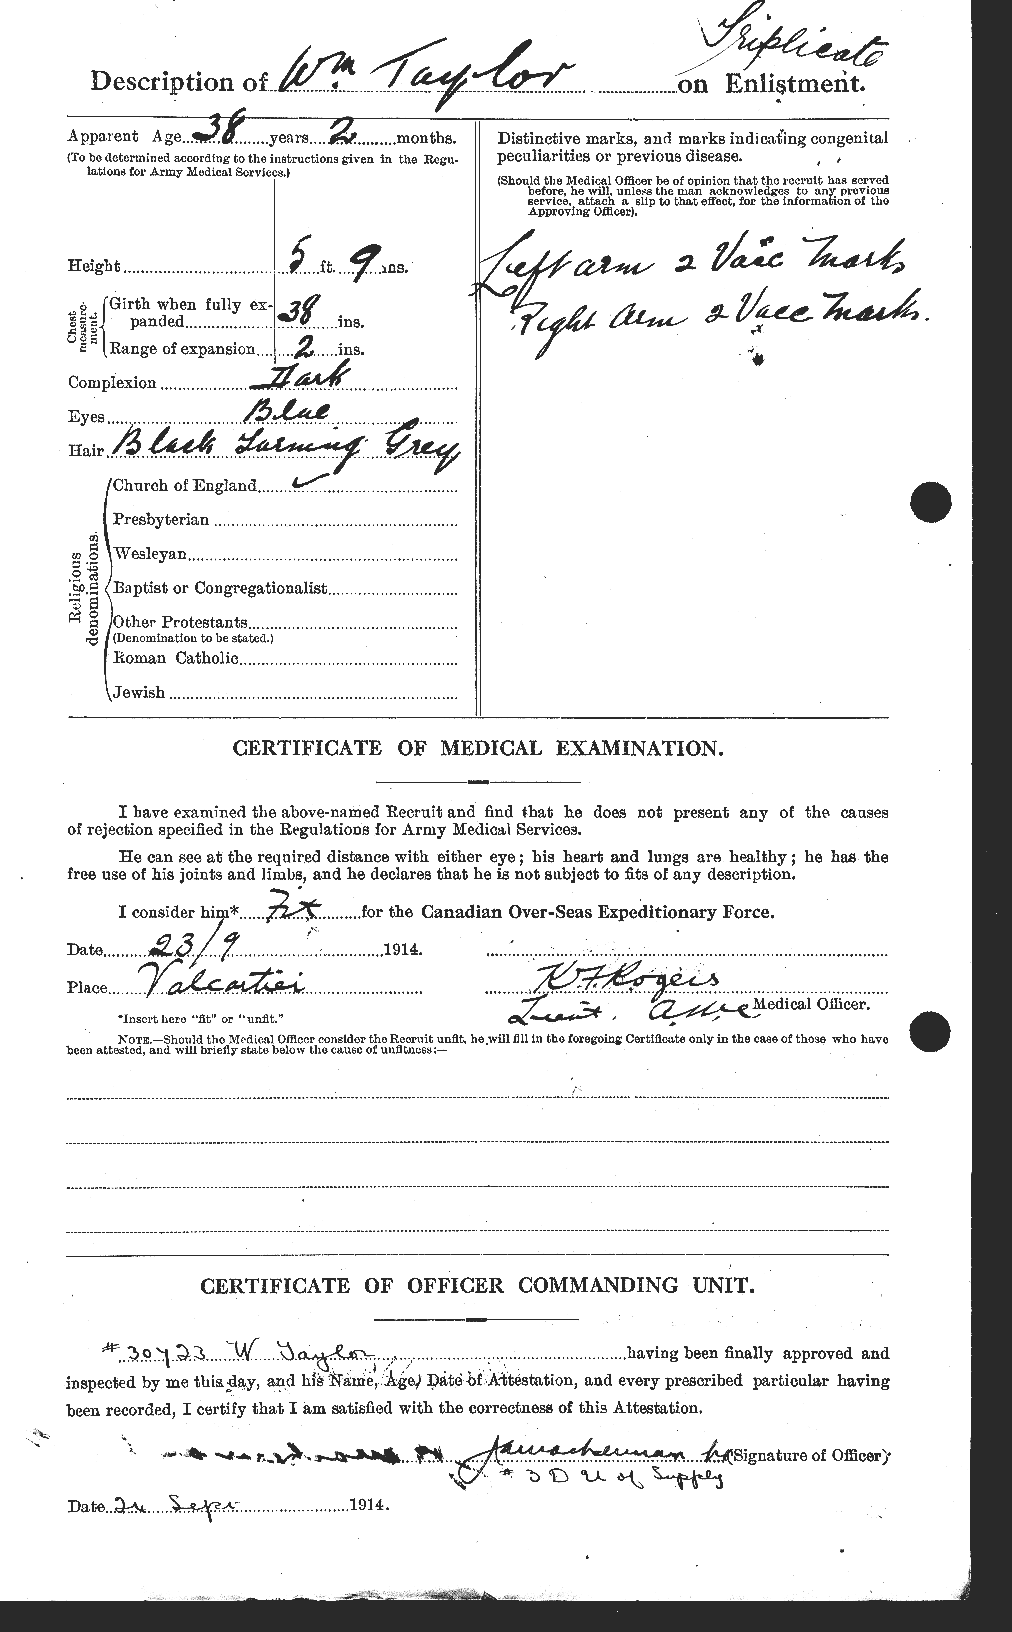 Dossiers du Personnel de la Première Guerre mondiale - CEC 628107b